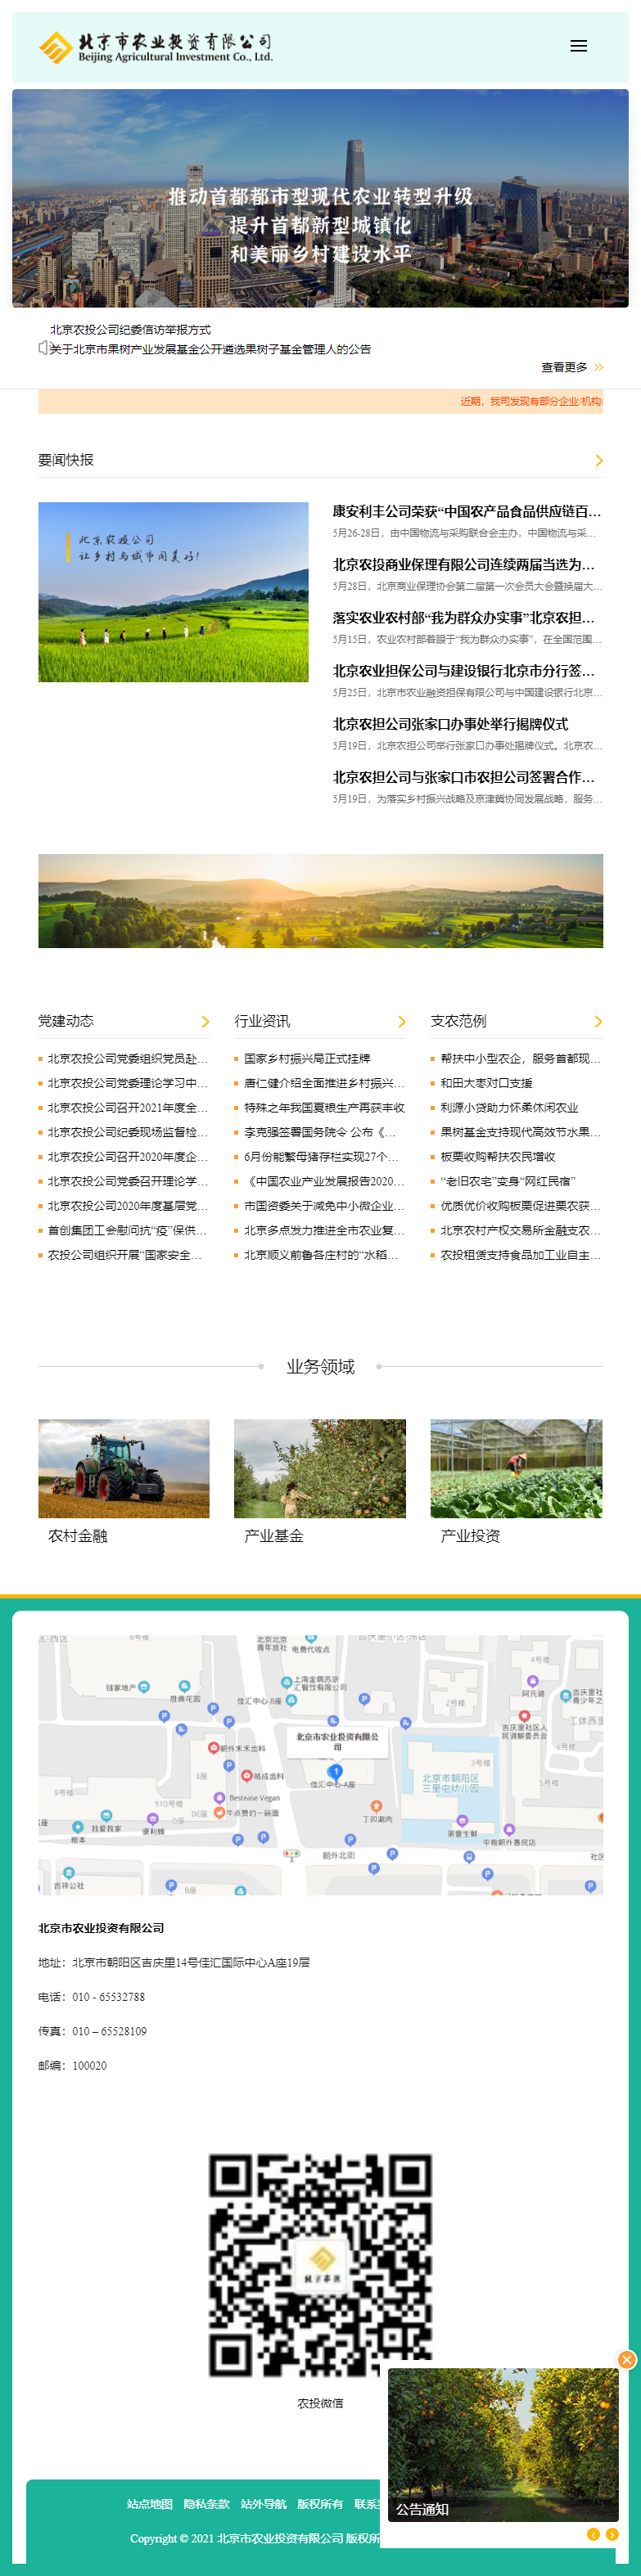 北京市农业投资有限公司网站案例